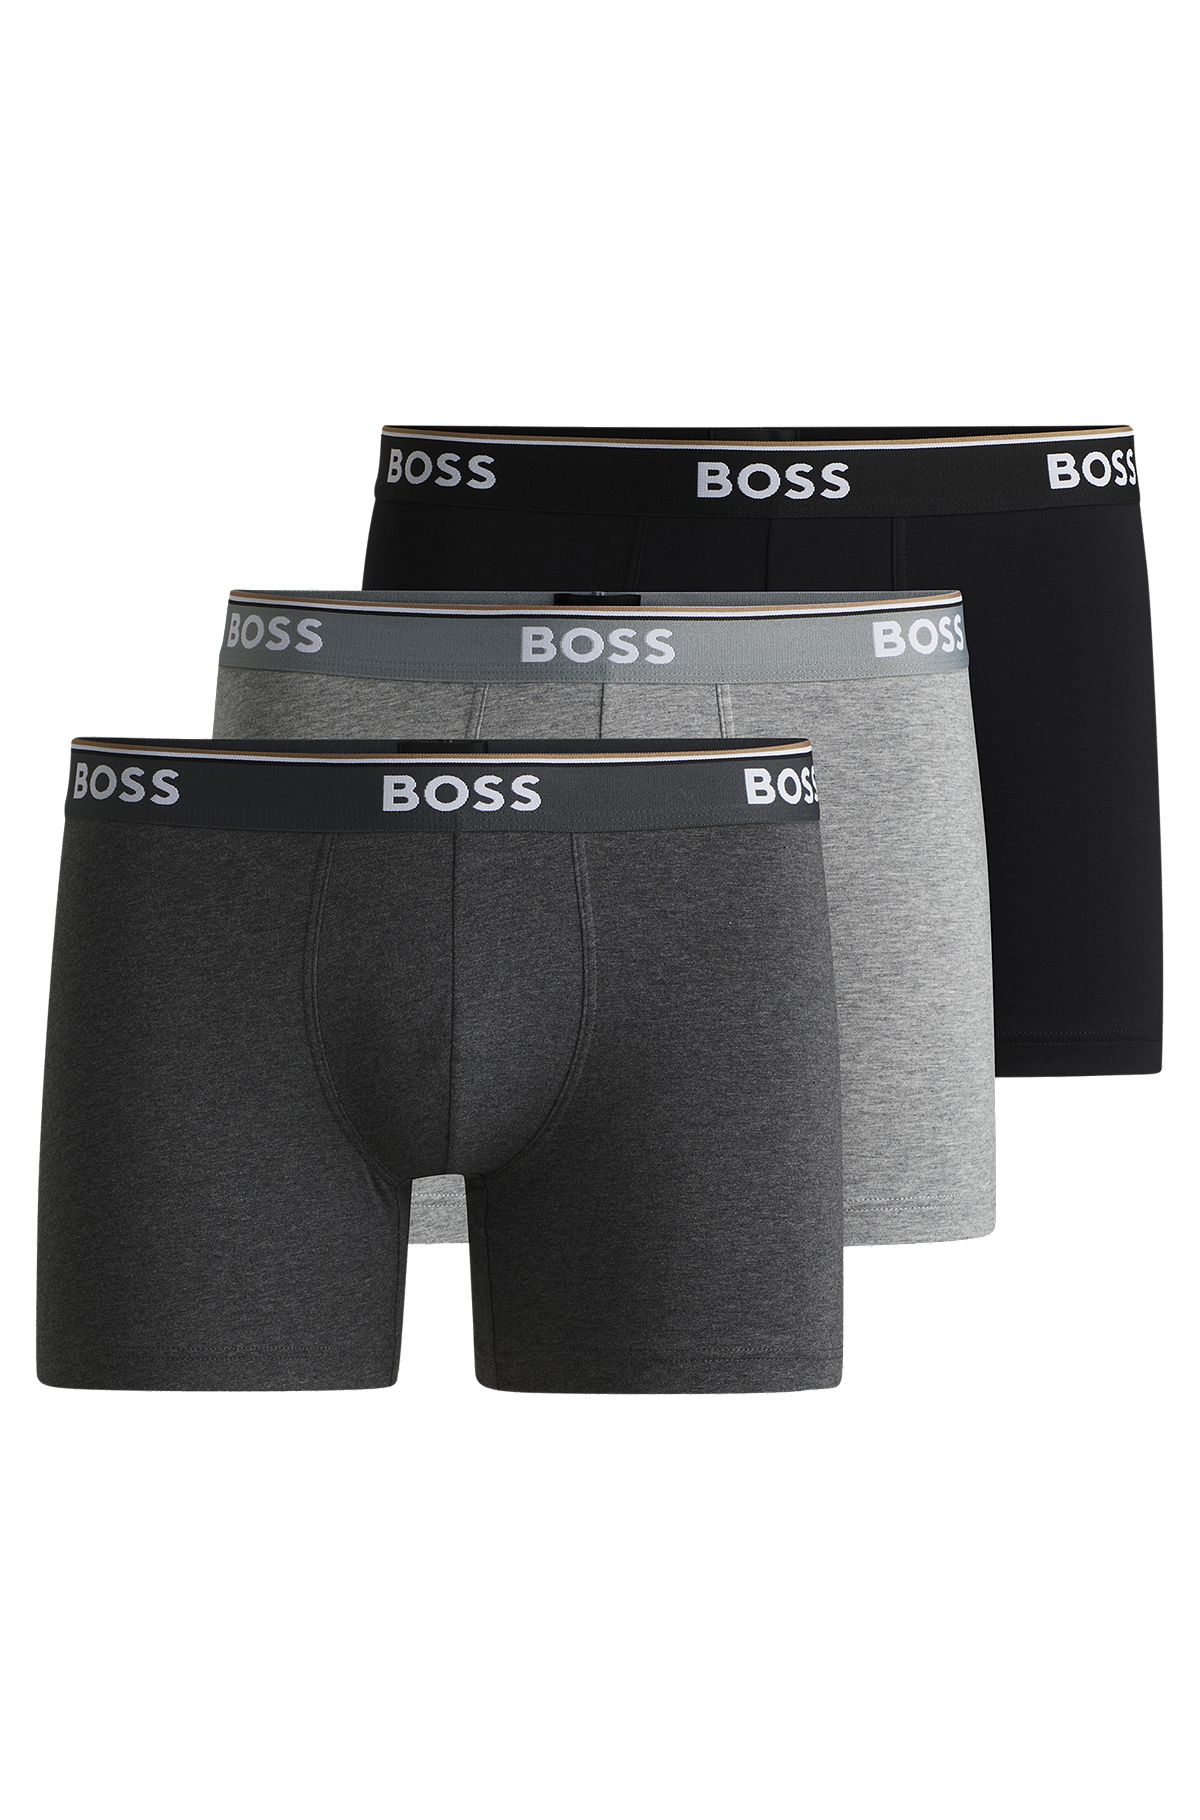  BOSS Brief Twin Pack Calzoncillos Hombre Blanco – XL – Ropa  interior calzoncillos : Ropa, Zapatos y Joyería